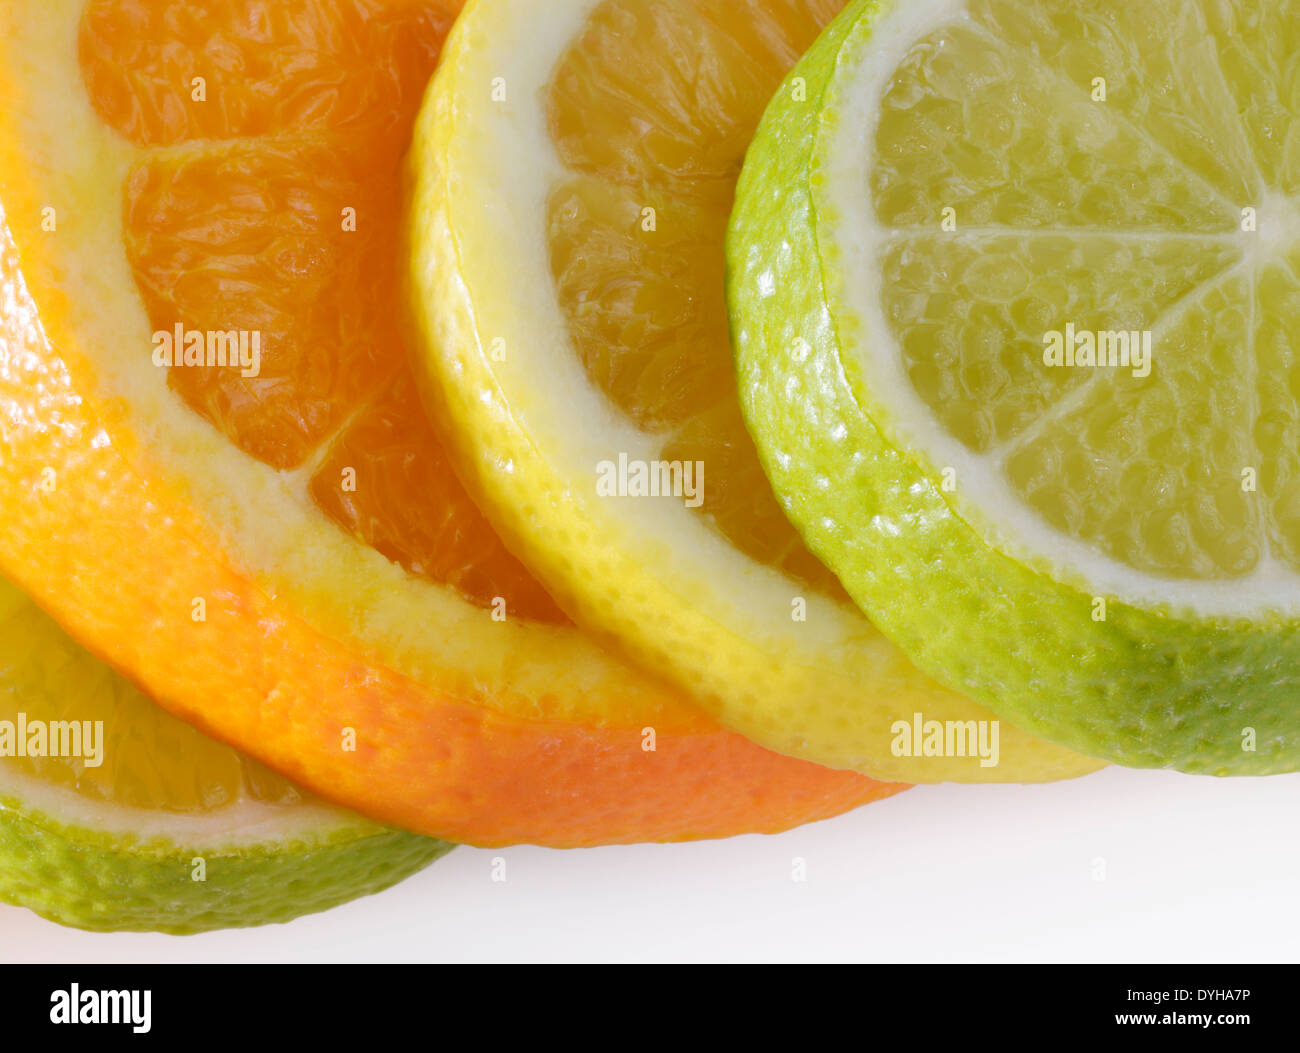 Scheiben von Zitrusfrüchten - Lime, Orange, Zitrone, Limette Stockfoto